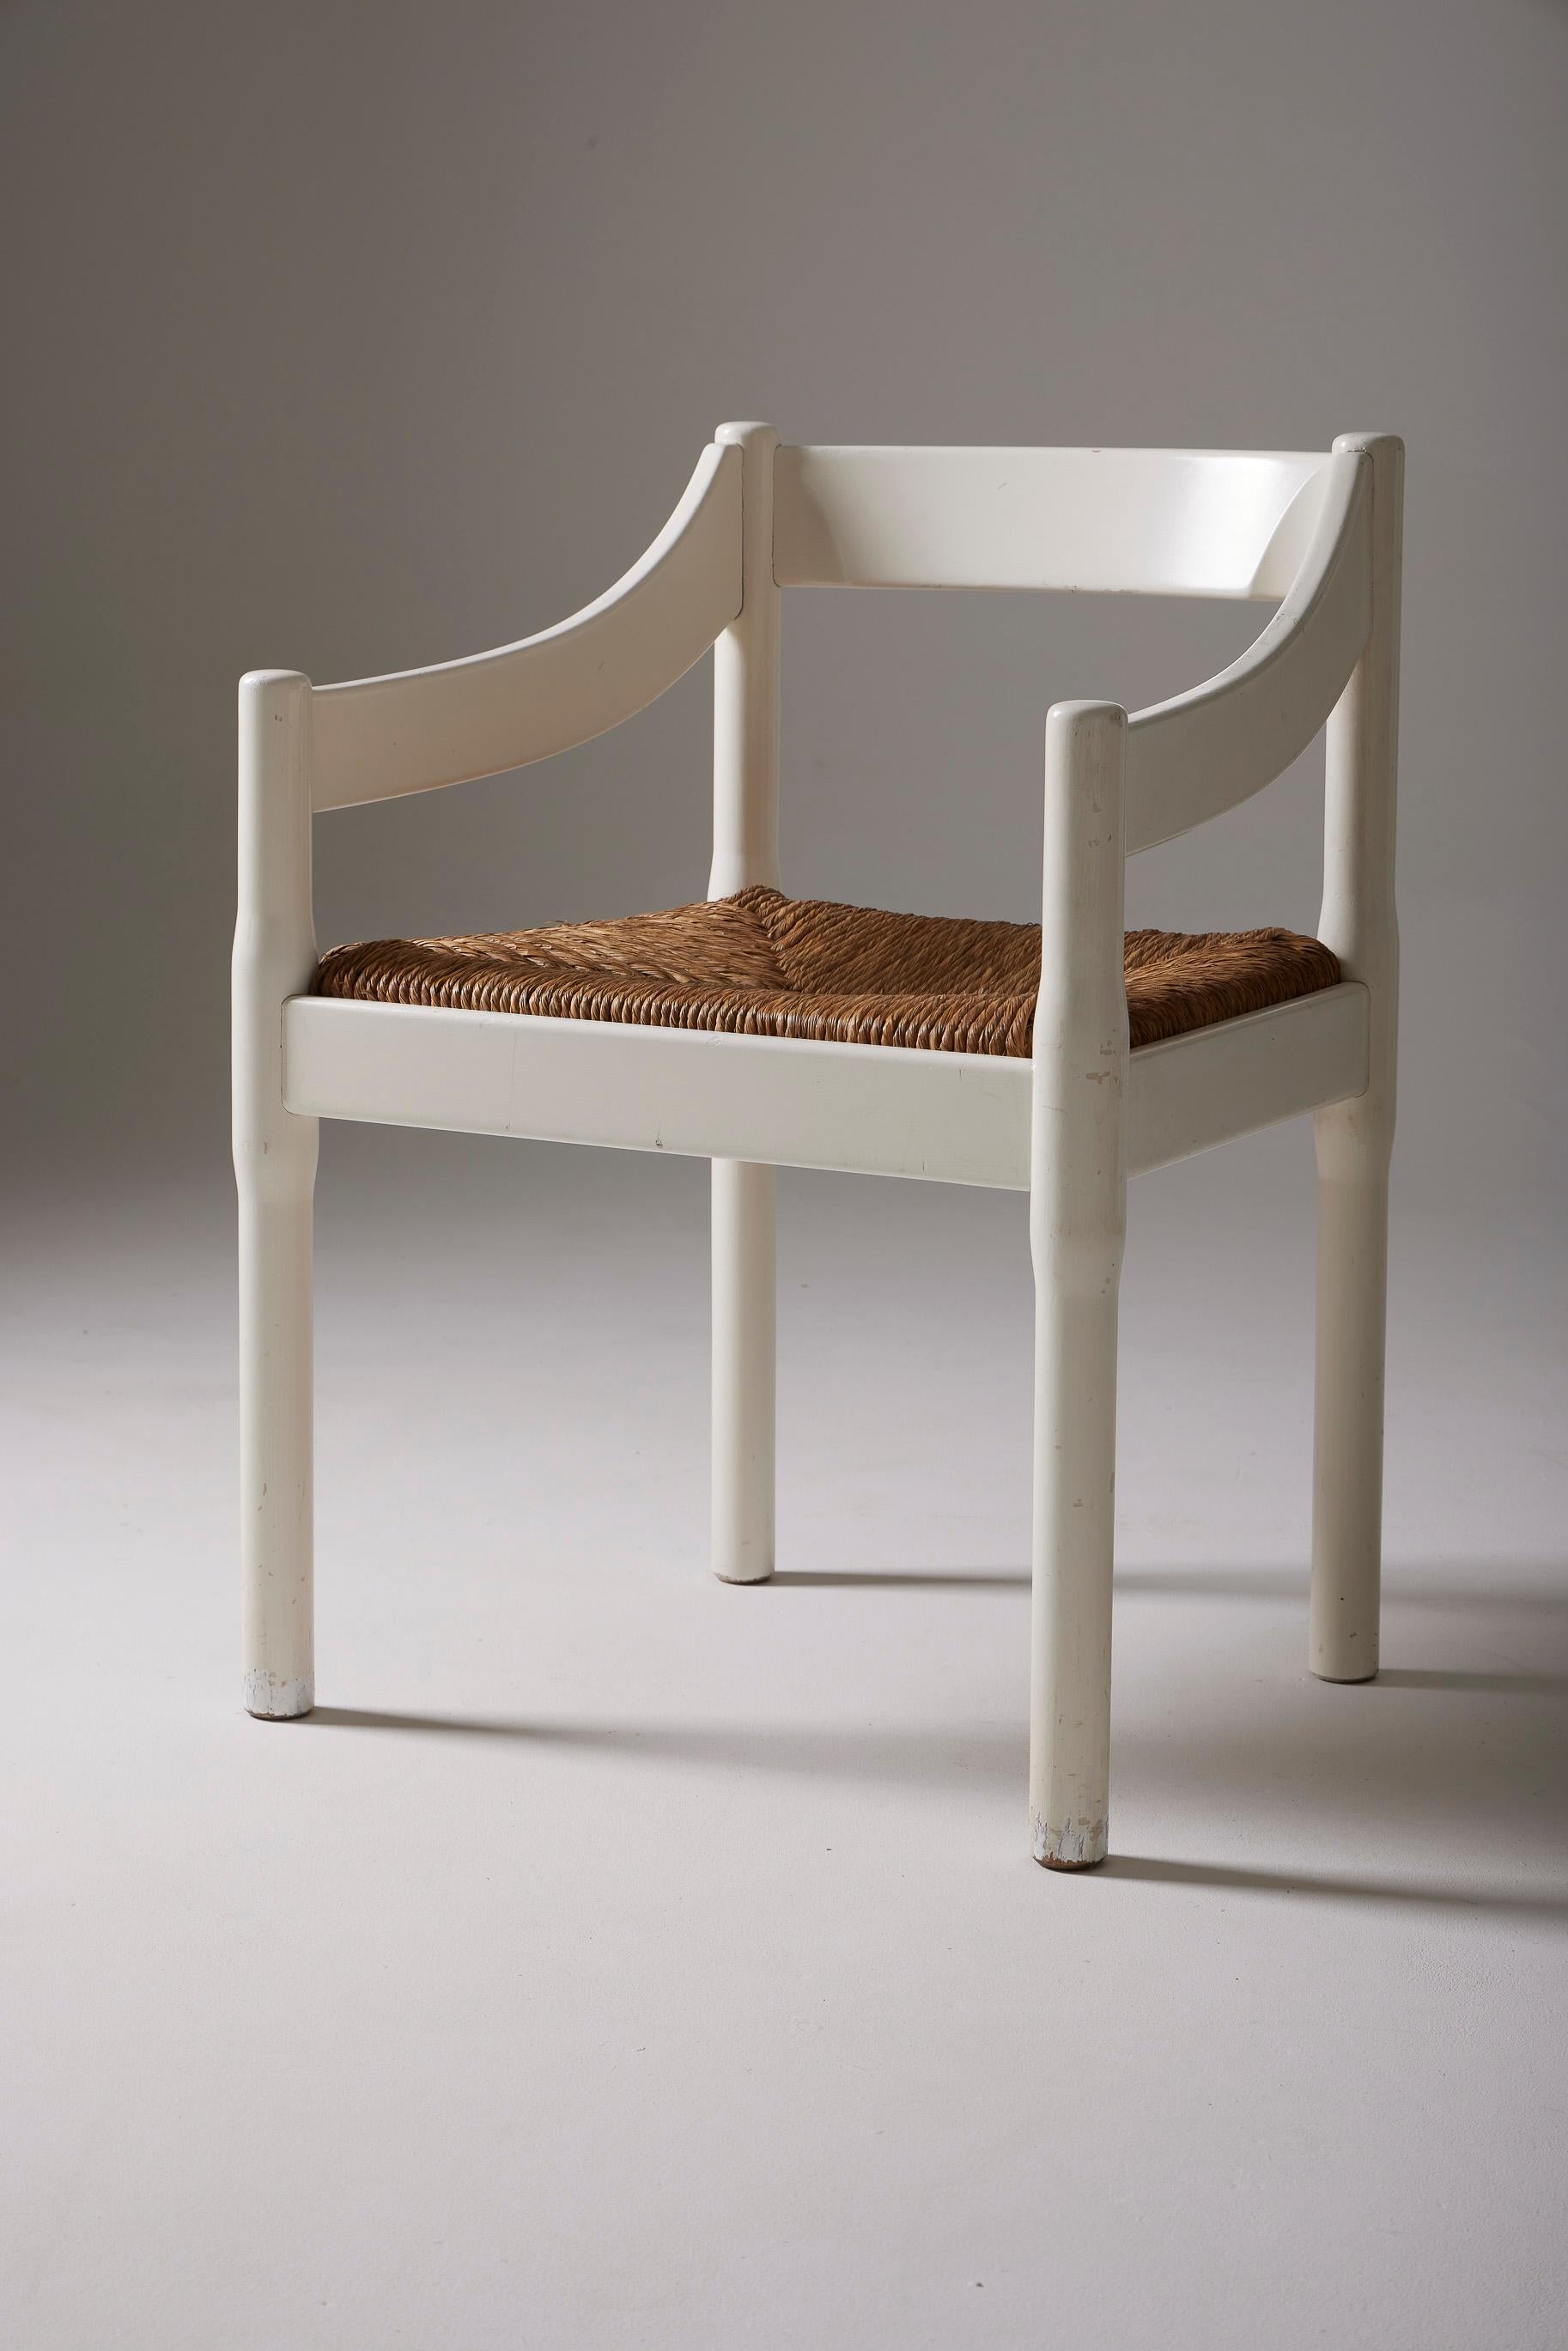 Carimate Stuhlmodell des großen italienischen Designers Vico Magistretti in den späten 1950er Jahren (1959). Die Stuhlstruktur ist aus weiß lackiertem Holz und die Sitzfläche aus Stroh. Diskrete Gebrauchsspuren zieren die Möbel und zeugen von ihrer